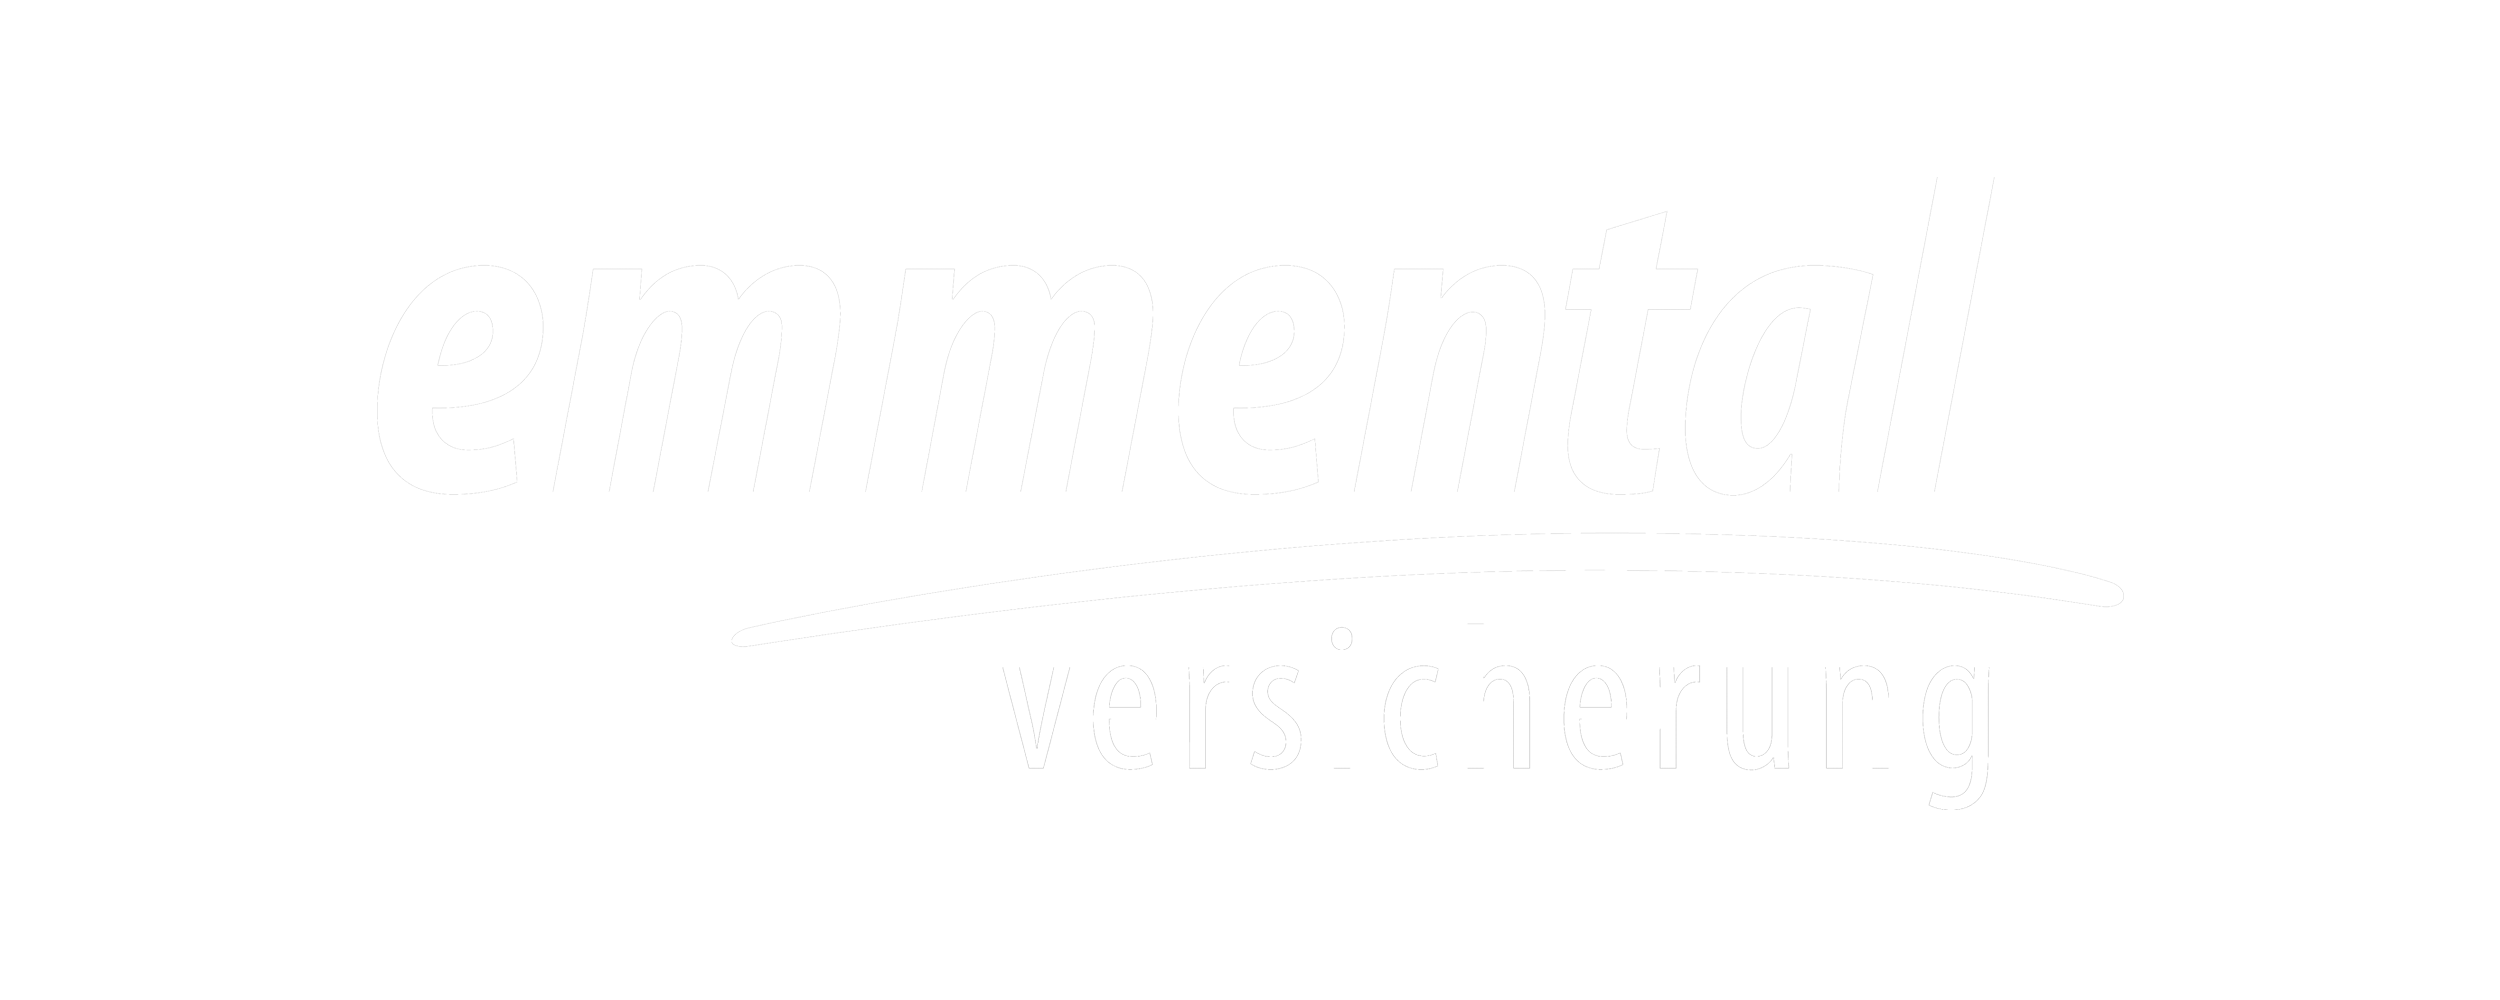 Emmental Logo